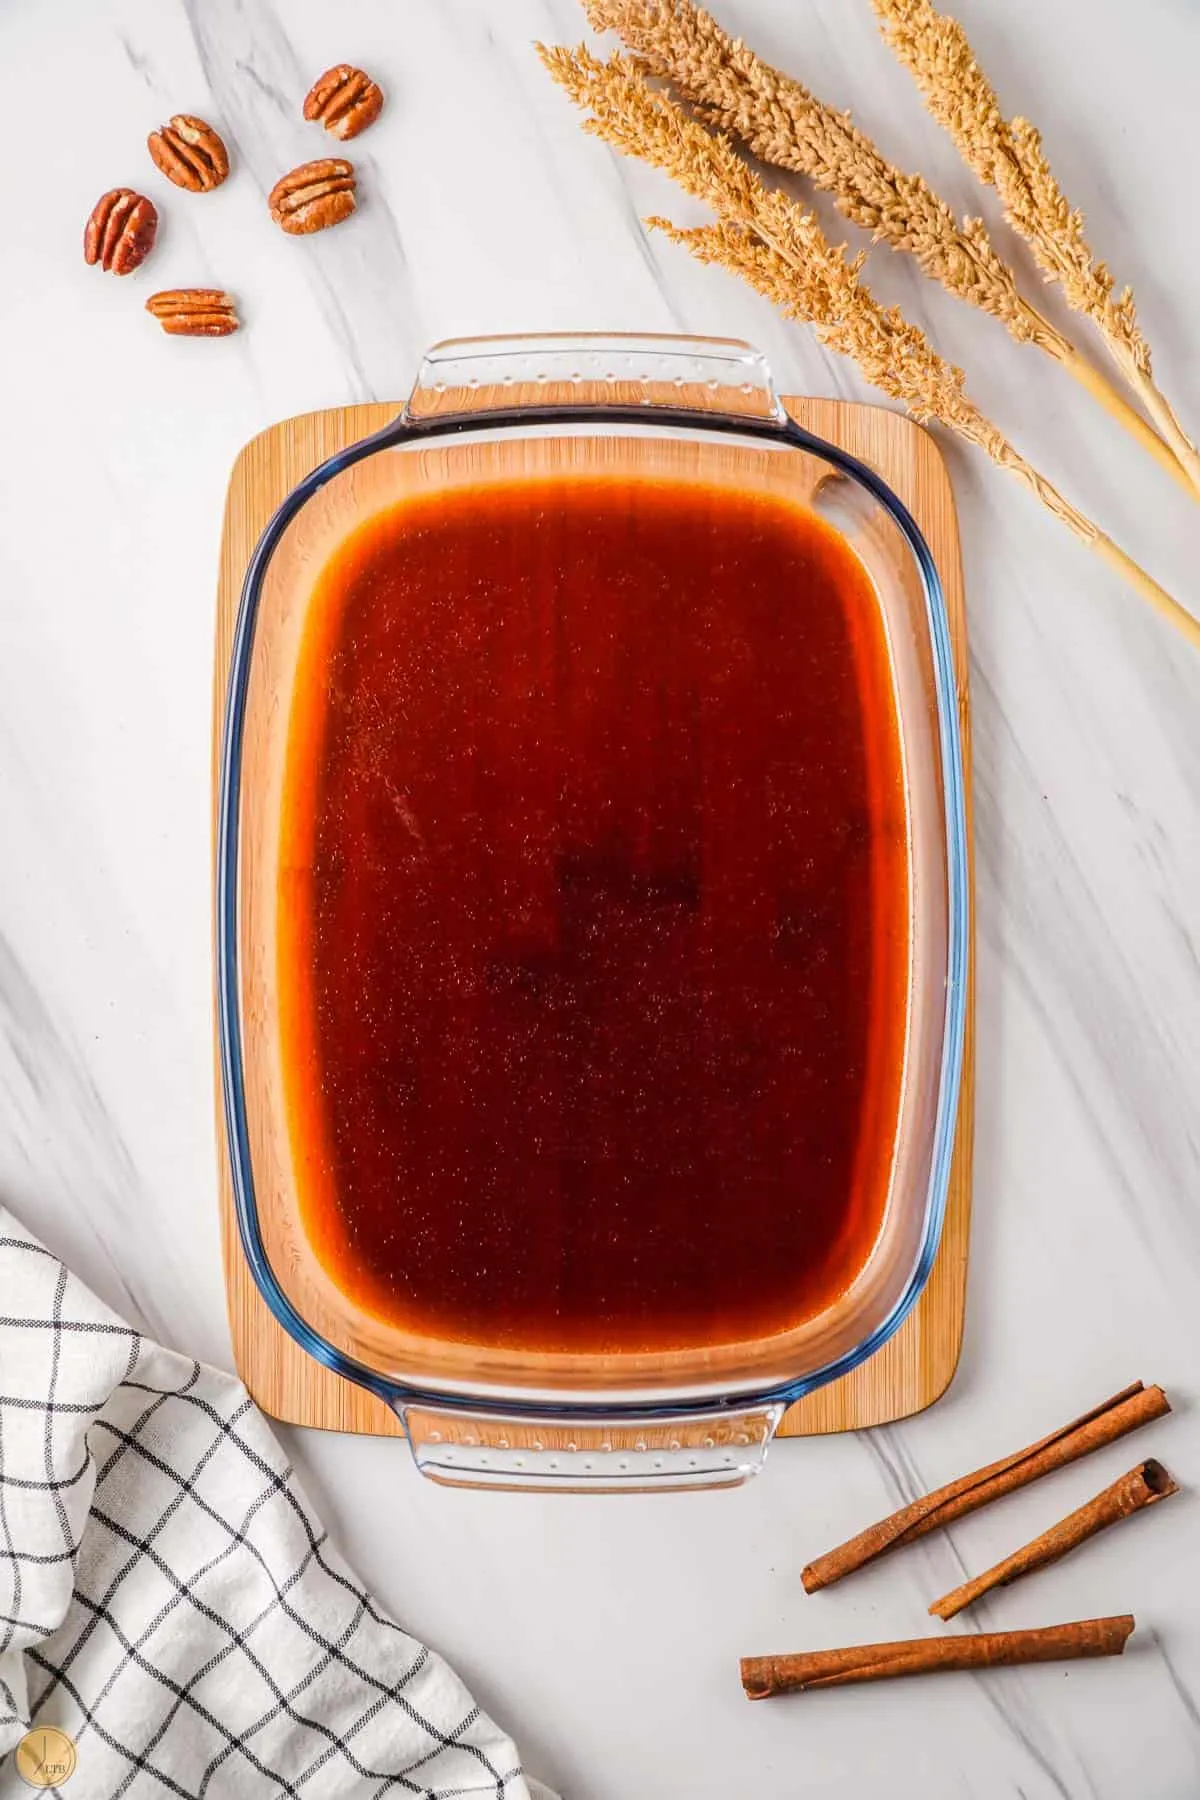 sweet sauce in a baking pan